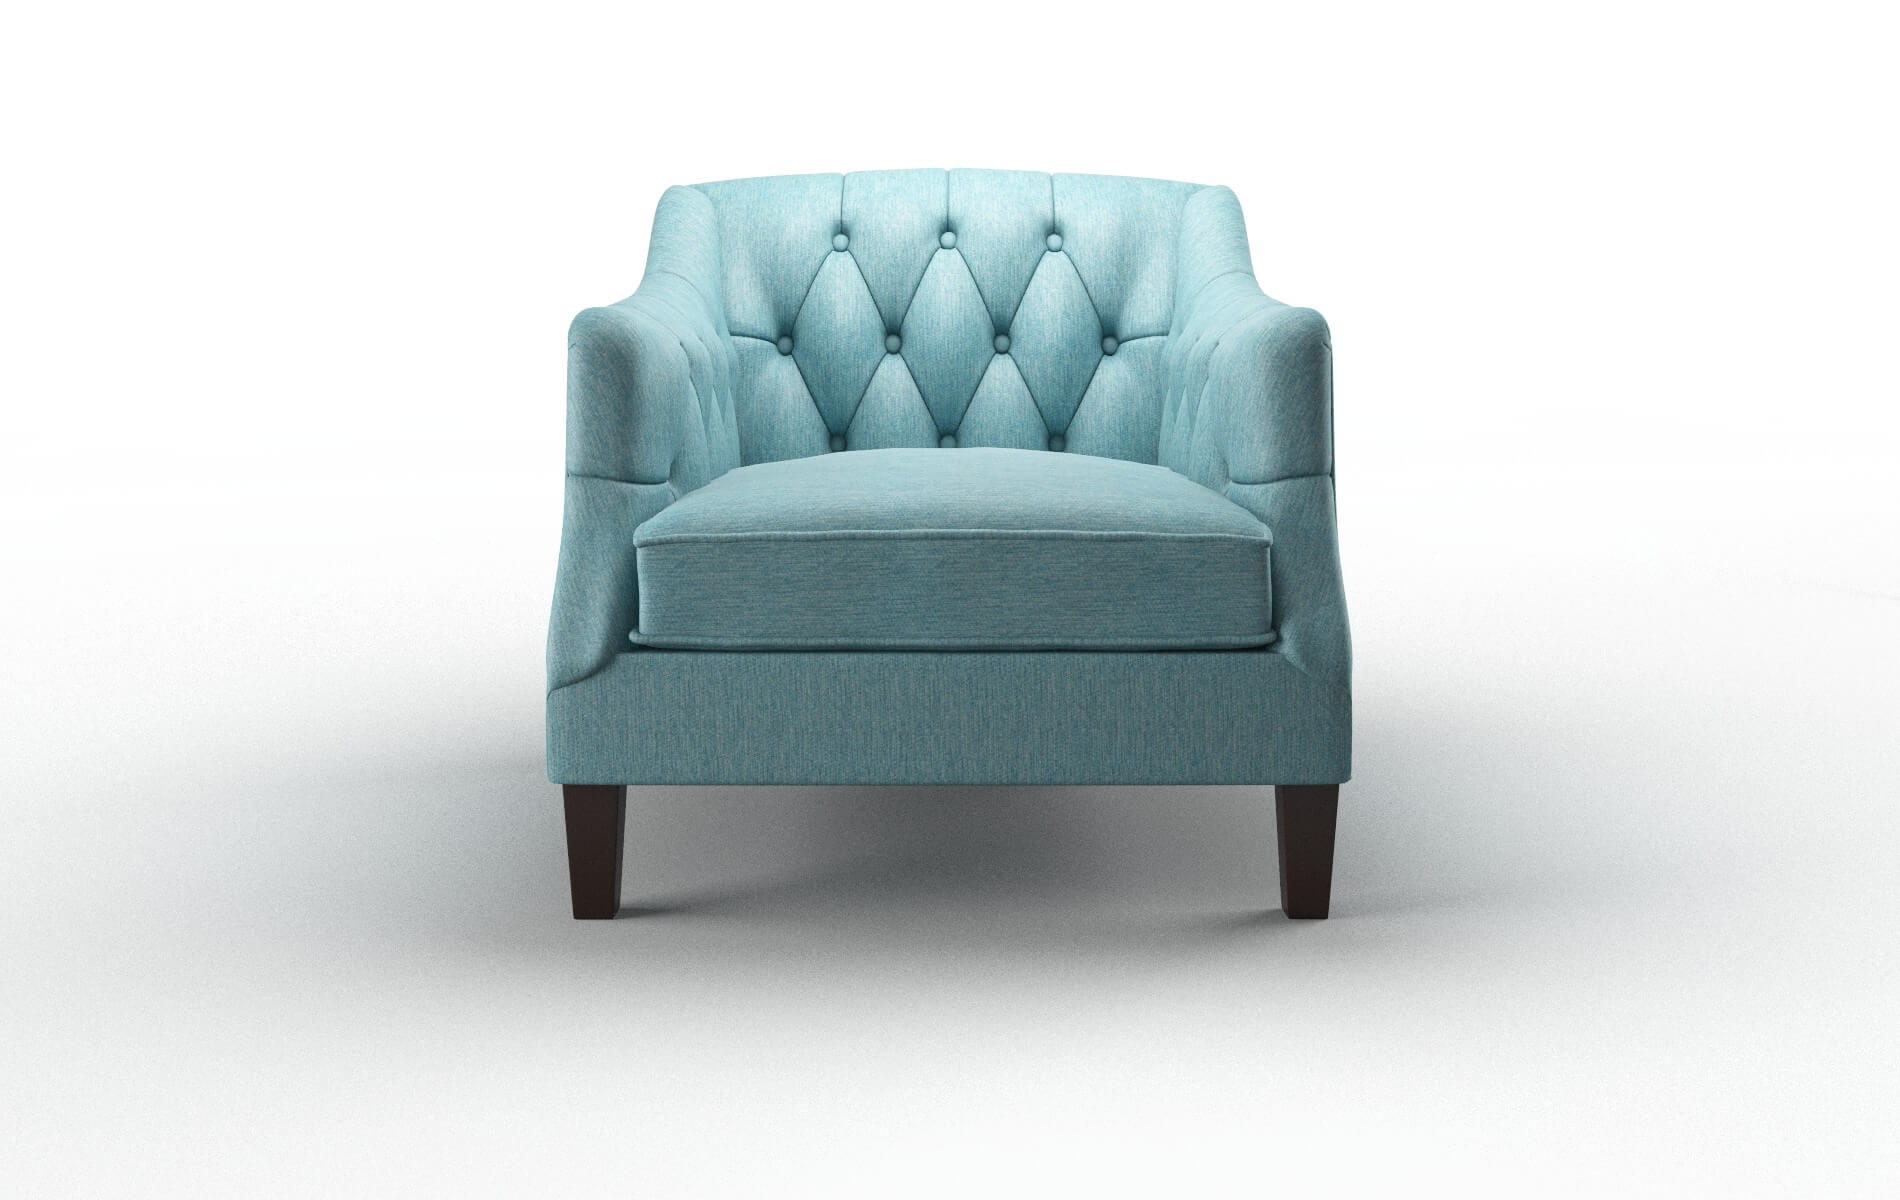 Shiraz Cosmo Turquoise Chair espresso legs 1